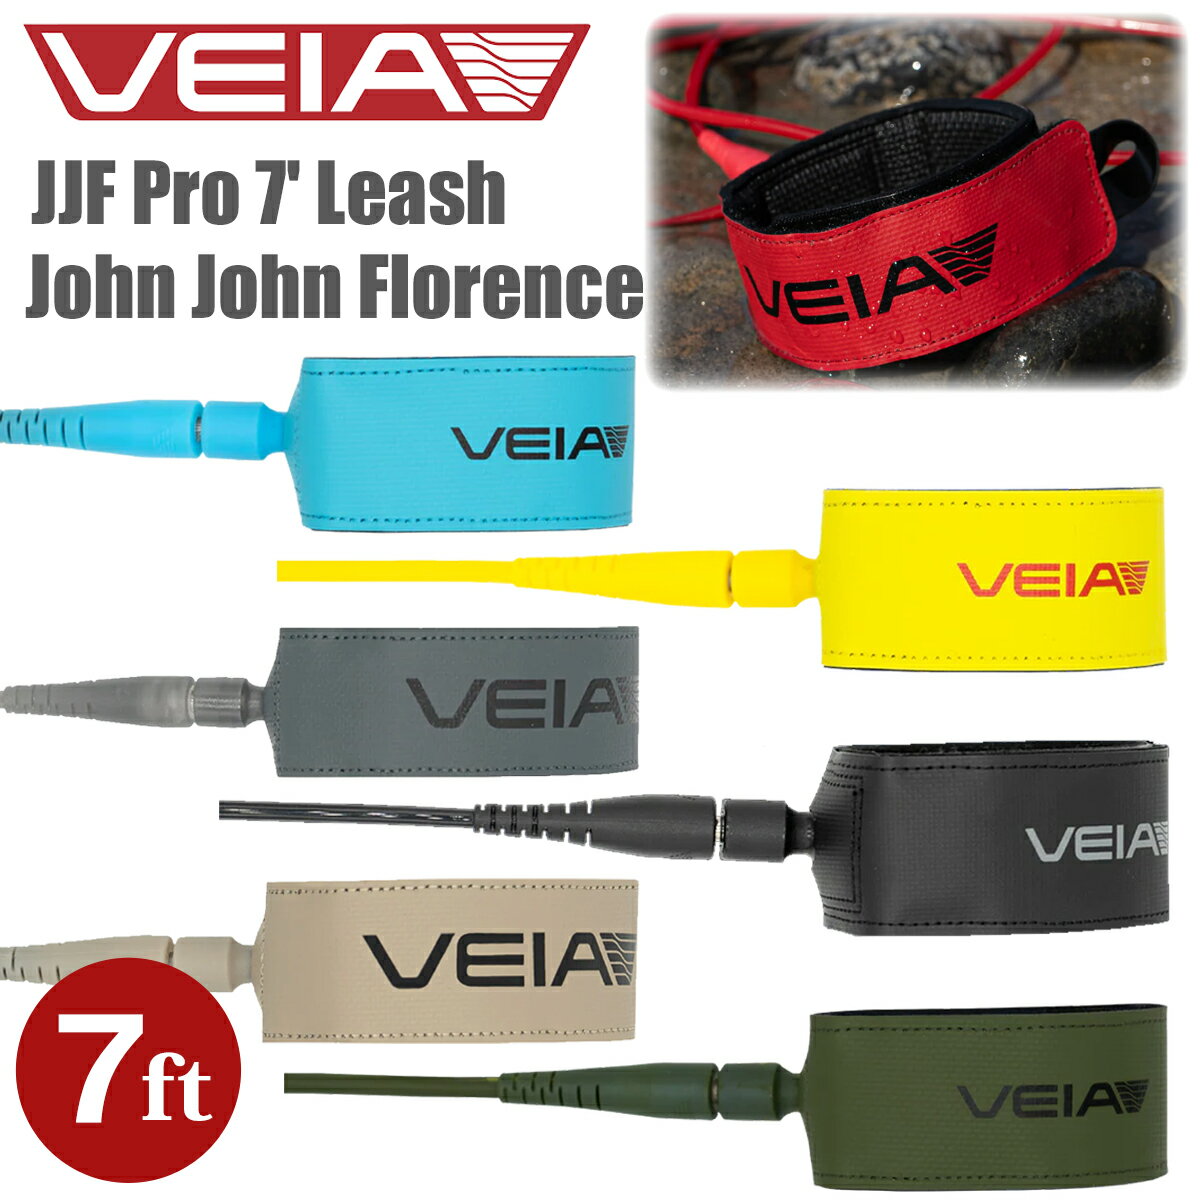 VEIA ヴェイア ベイア リーシュコード JJF Pro 7 Leash 7ft 7mm ジョンジョンフローレンス プロ リッシュコード パワーコード サーフィン グッズ ジョン・ジョン・フローレンス 日本正規品